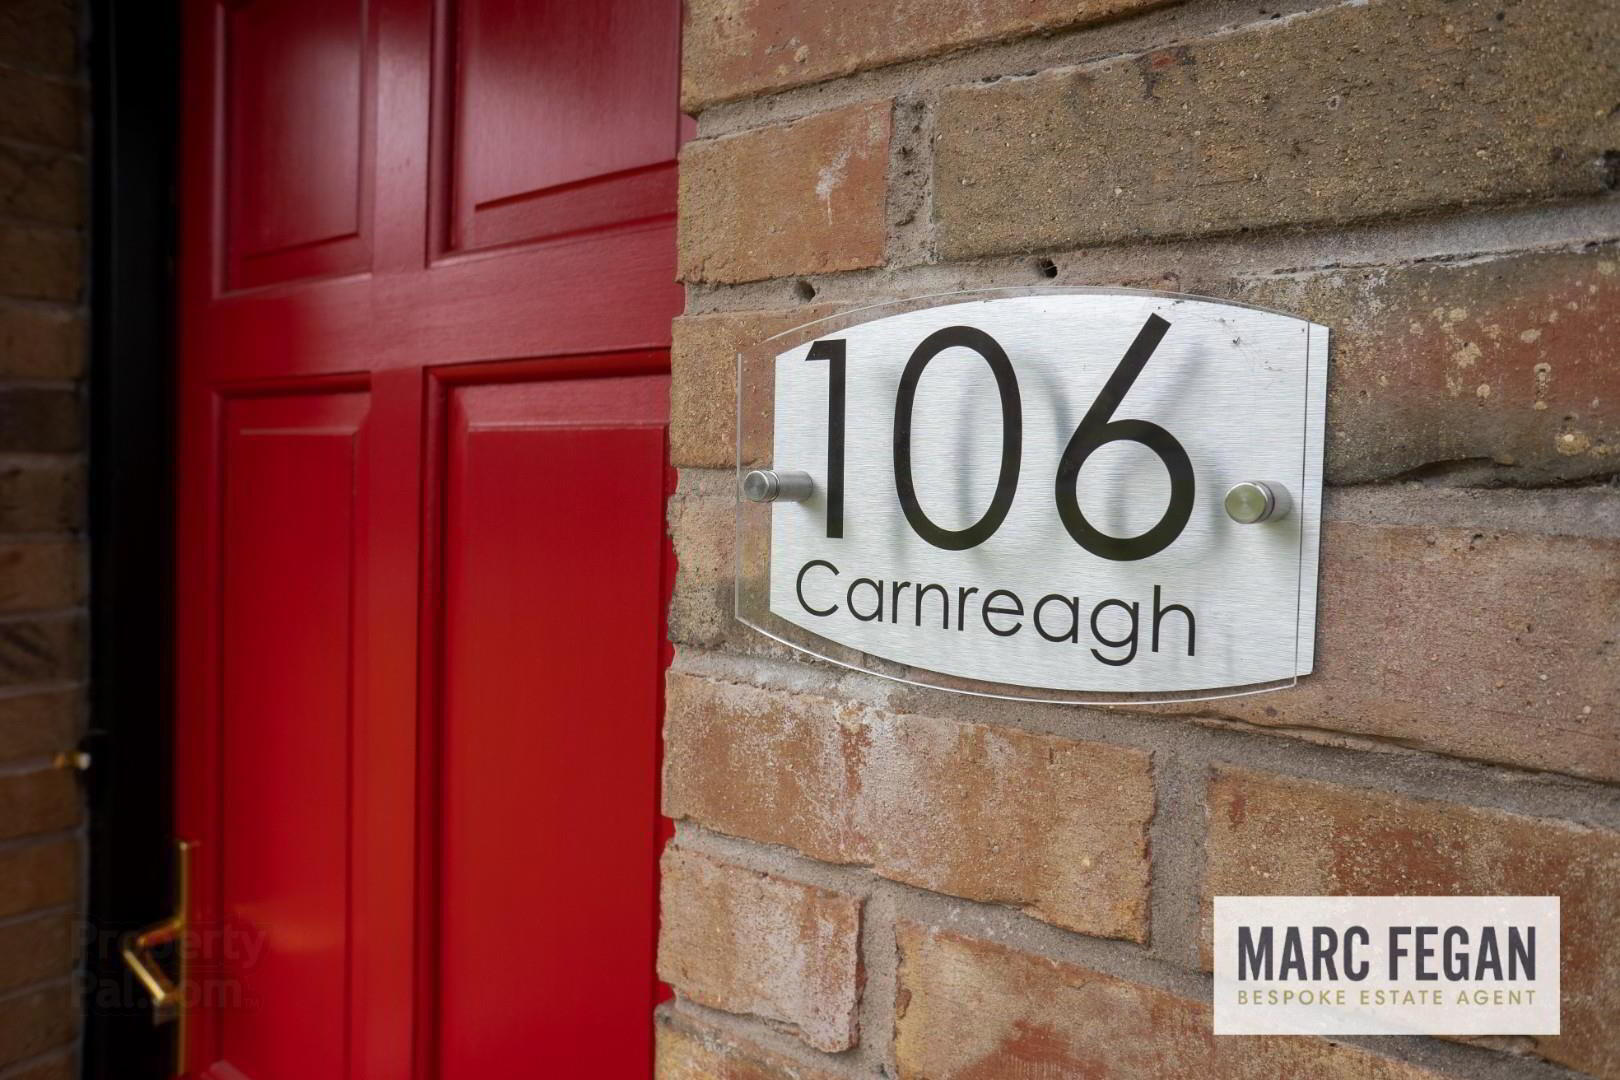 106 Carnreagh